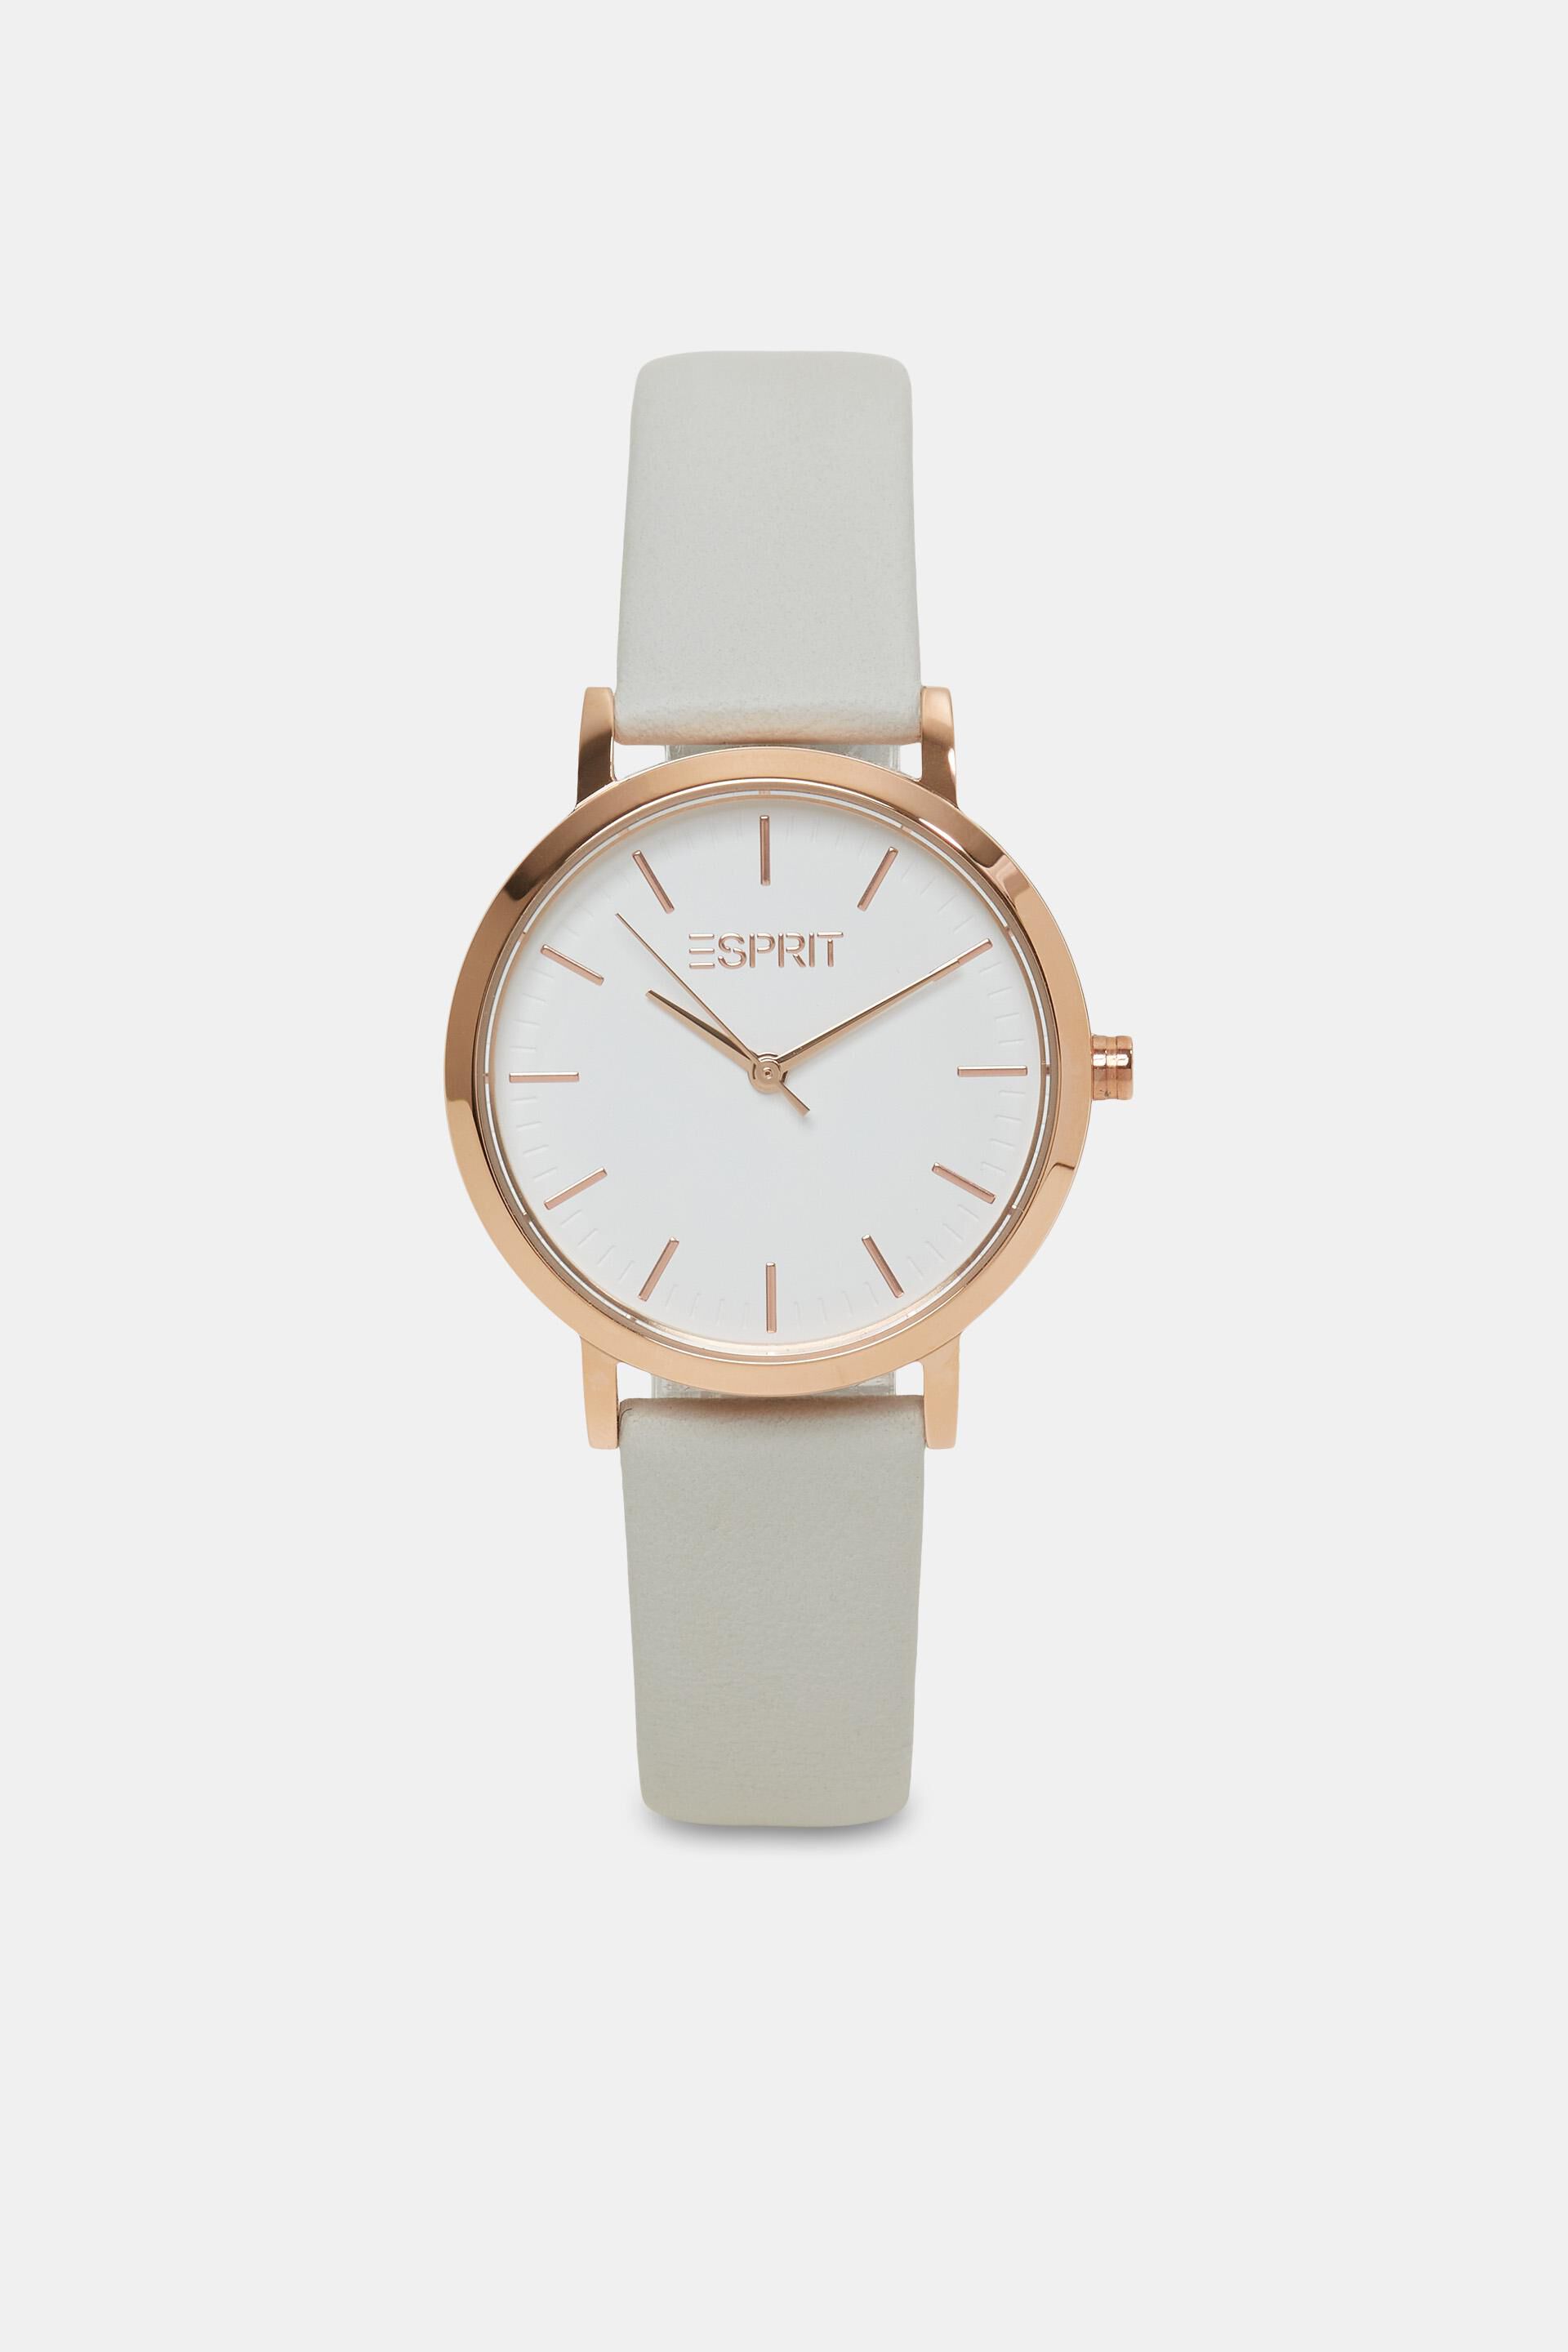 Esprit Watch - Brooklyn ES1L342M0065 | eBay